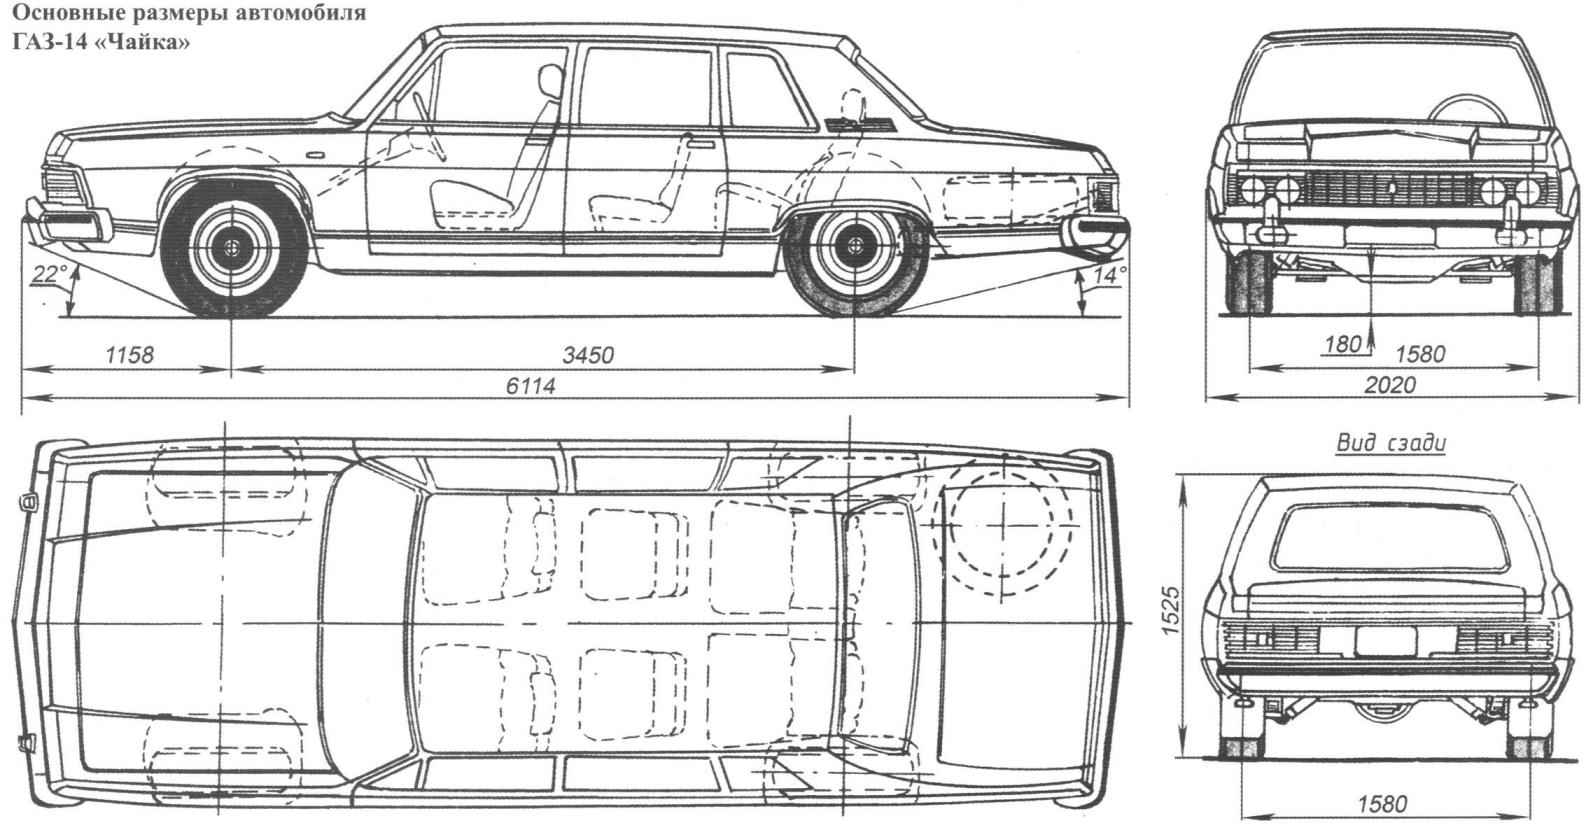 Основные размеры автомобиля ГАЗ-14 «Чайка»